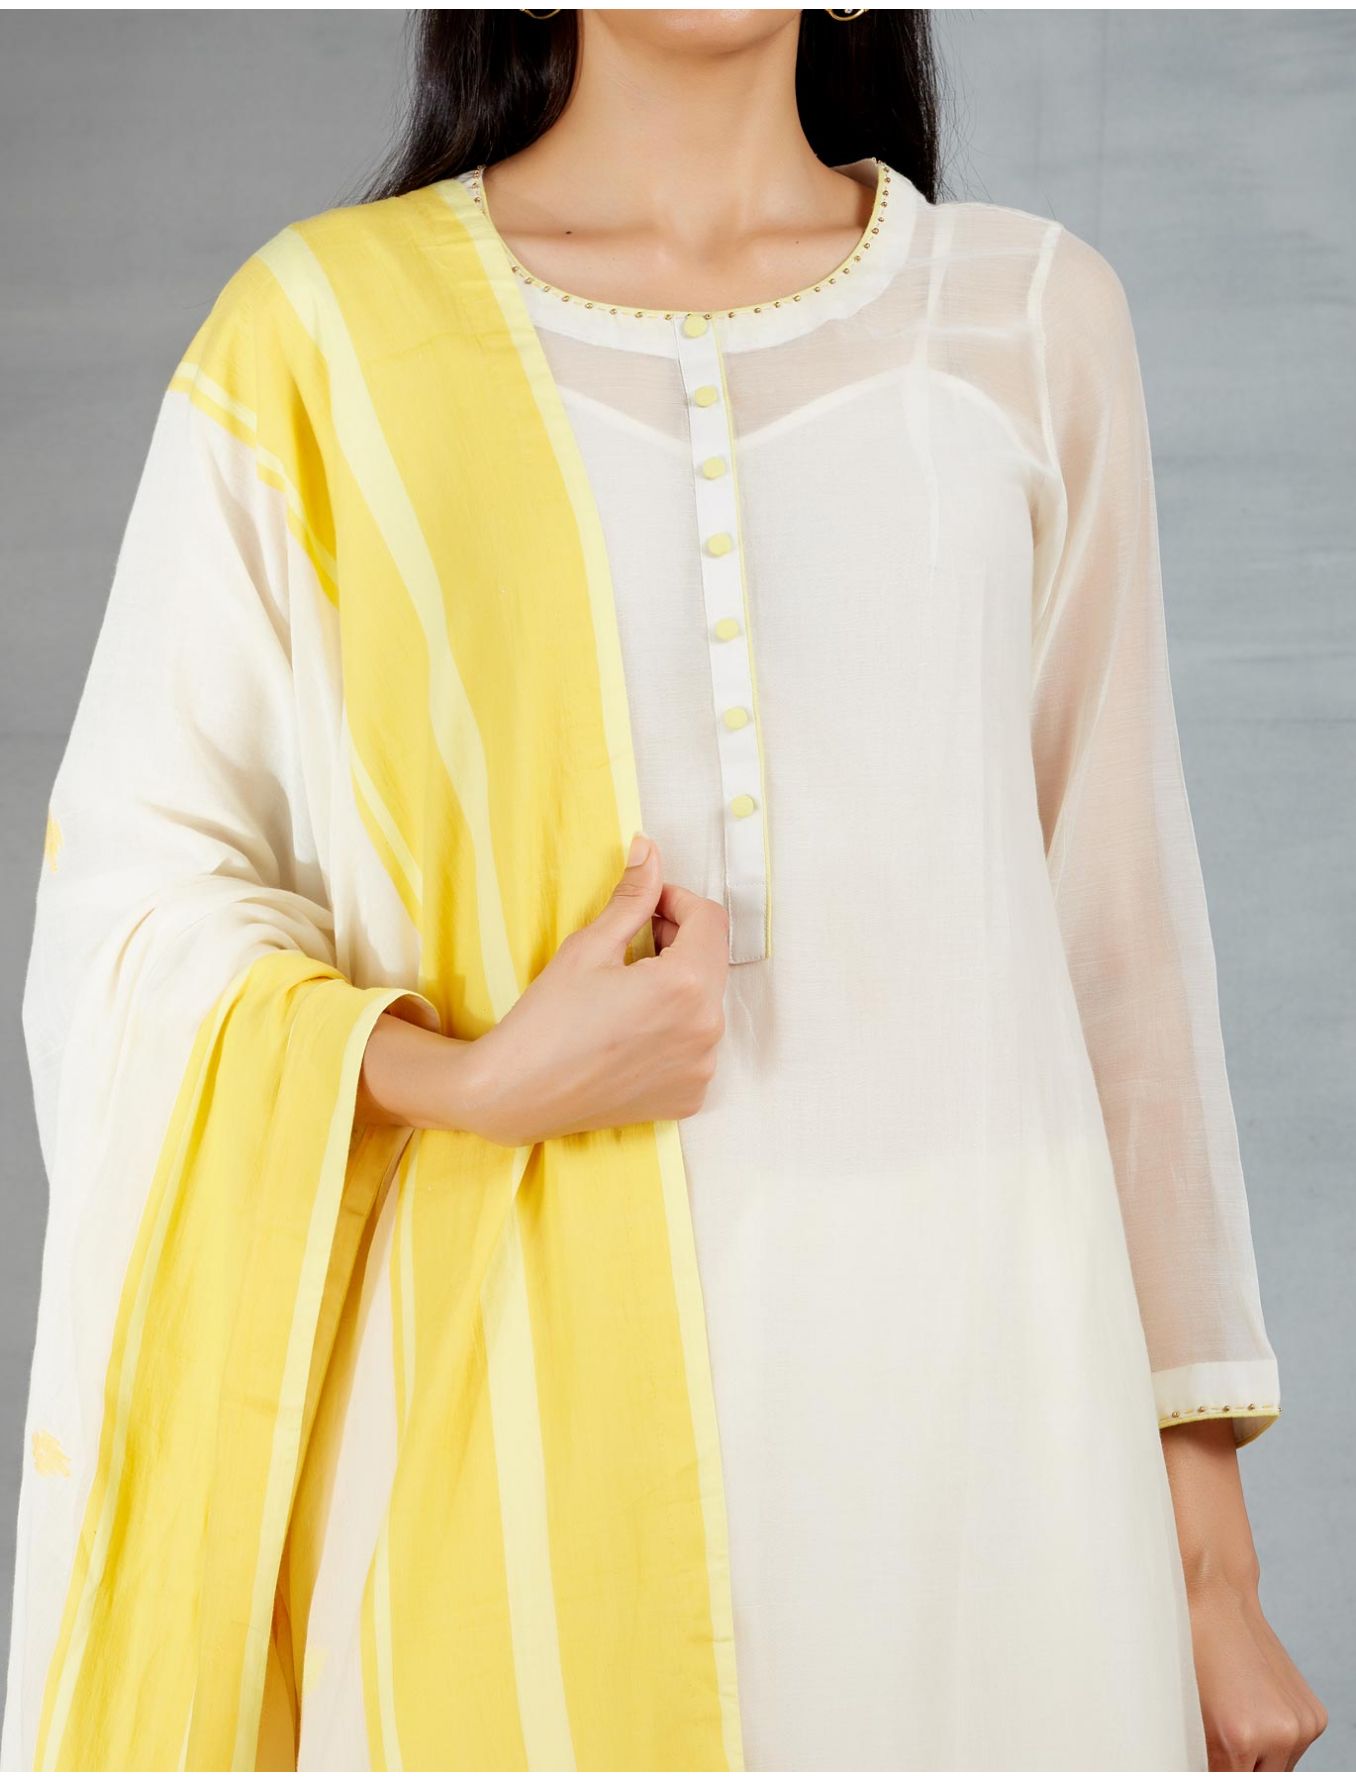 Dhakai joda in Cream and Yellow